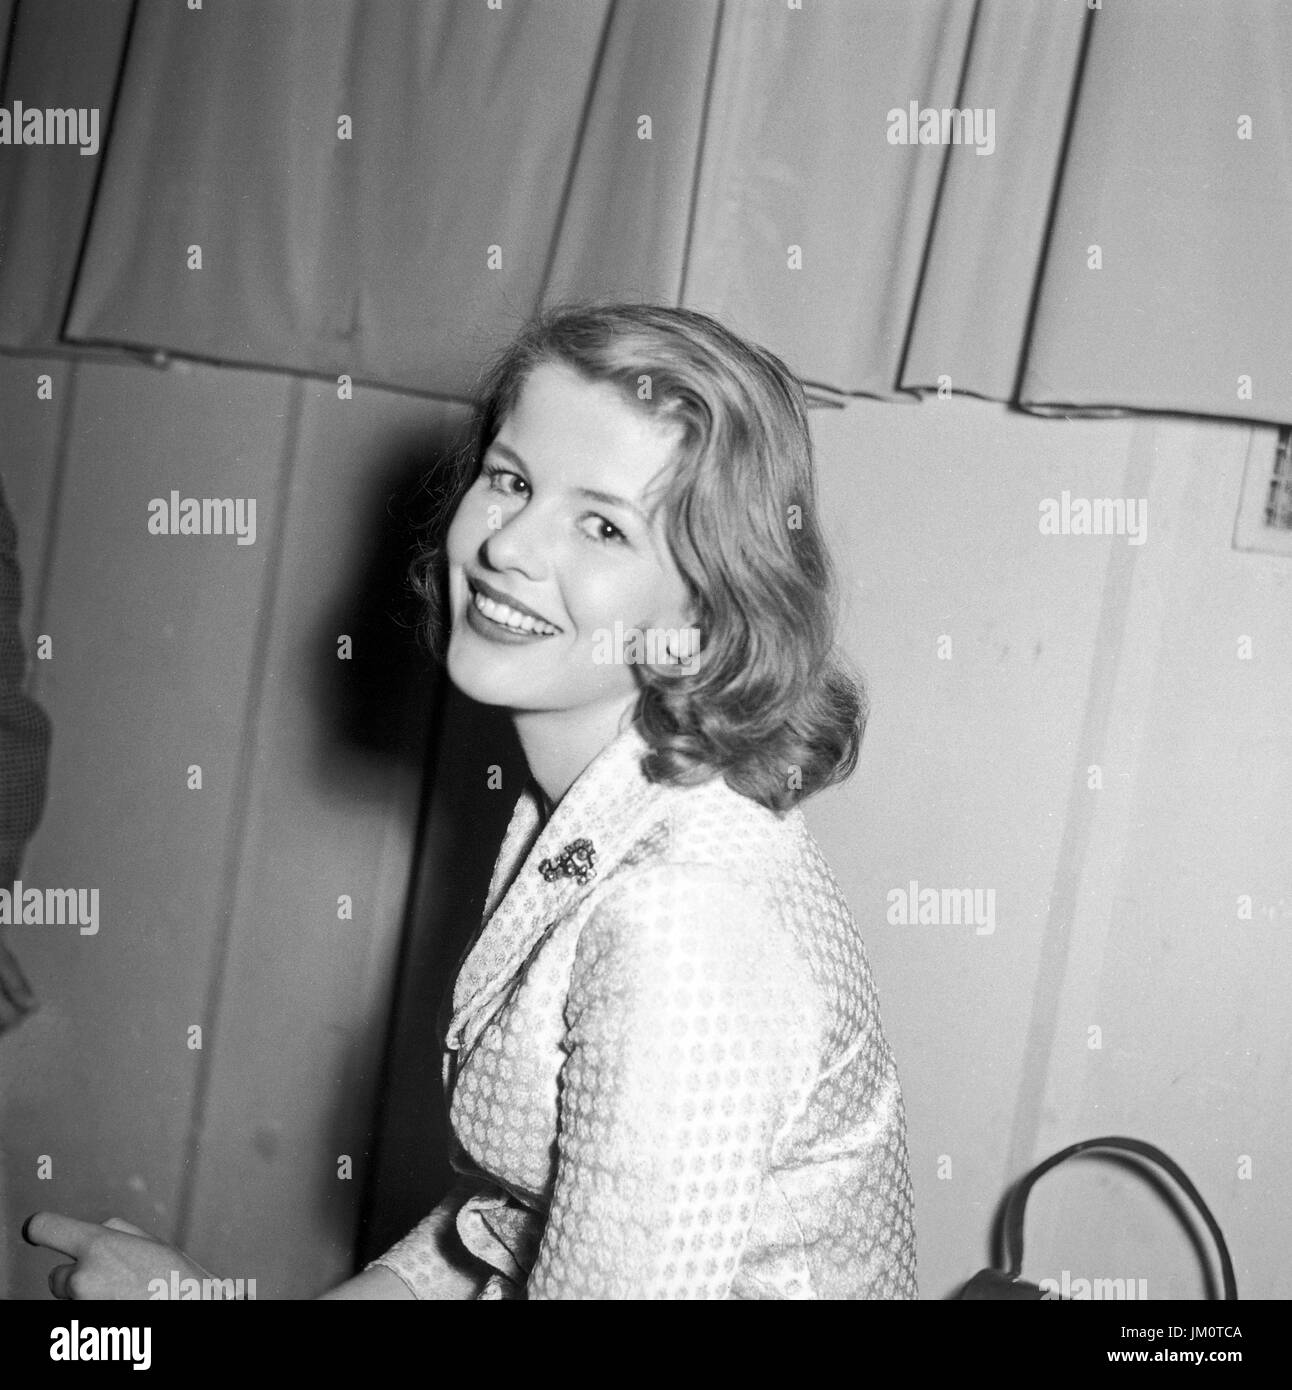 Eine Junge Frau Lächelt Hinter der Bühne in Die Kamera, 1950er Jahre Deutschland. Eine junge Frau lächelnd hinter den Kulissen an der Kamera, Deutschland der 1950er Jahre. Stockfoto